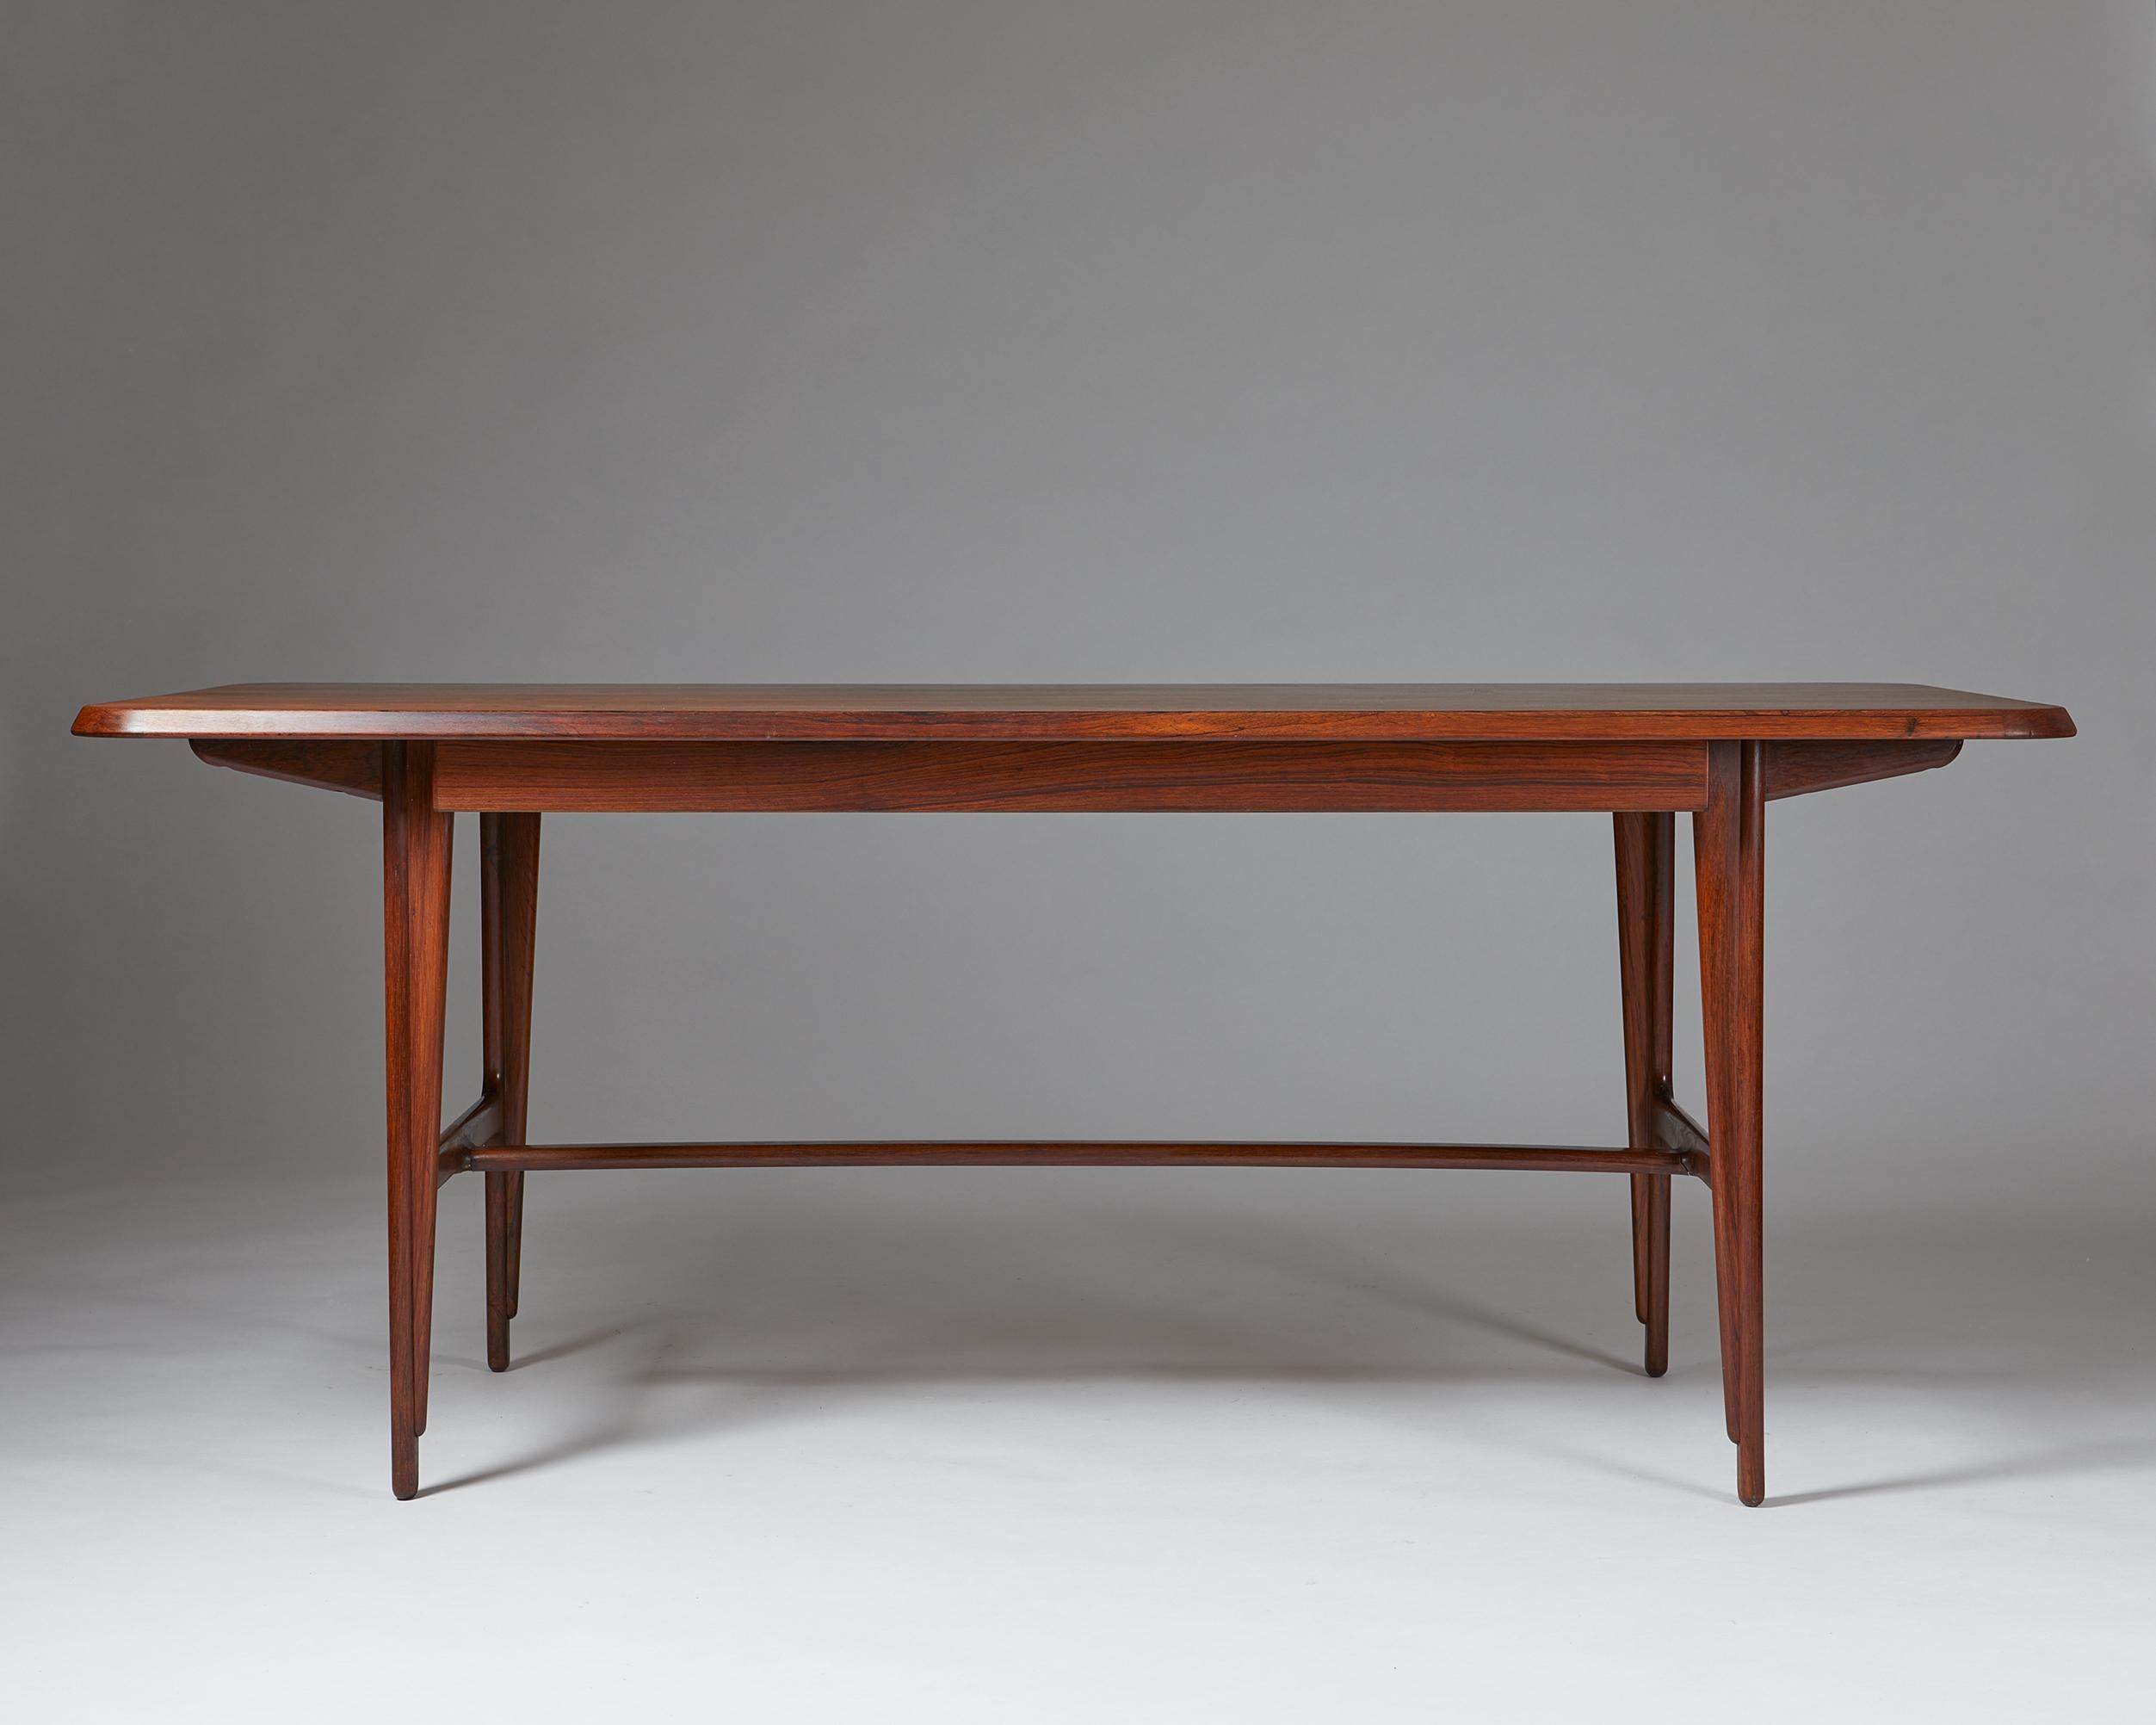 Mid-20th Century Desk Designed by Kurt Olsen for A. Andersen & Bohm, Denmark, 1957